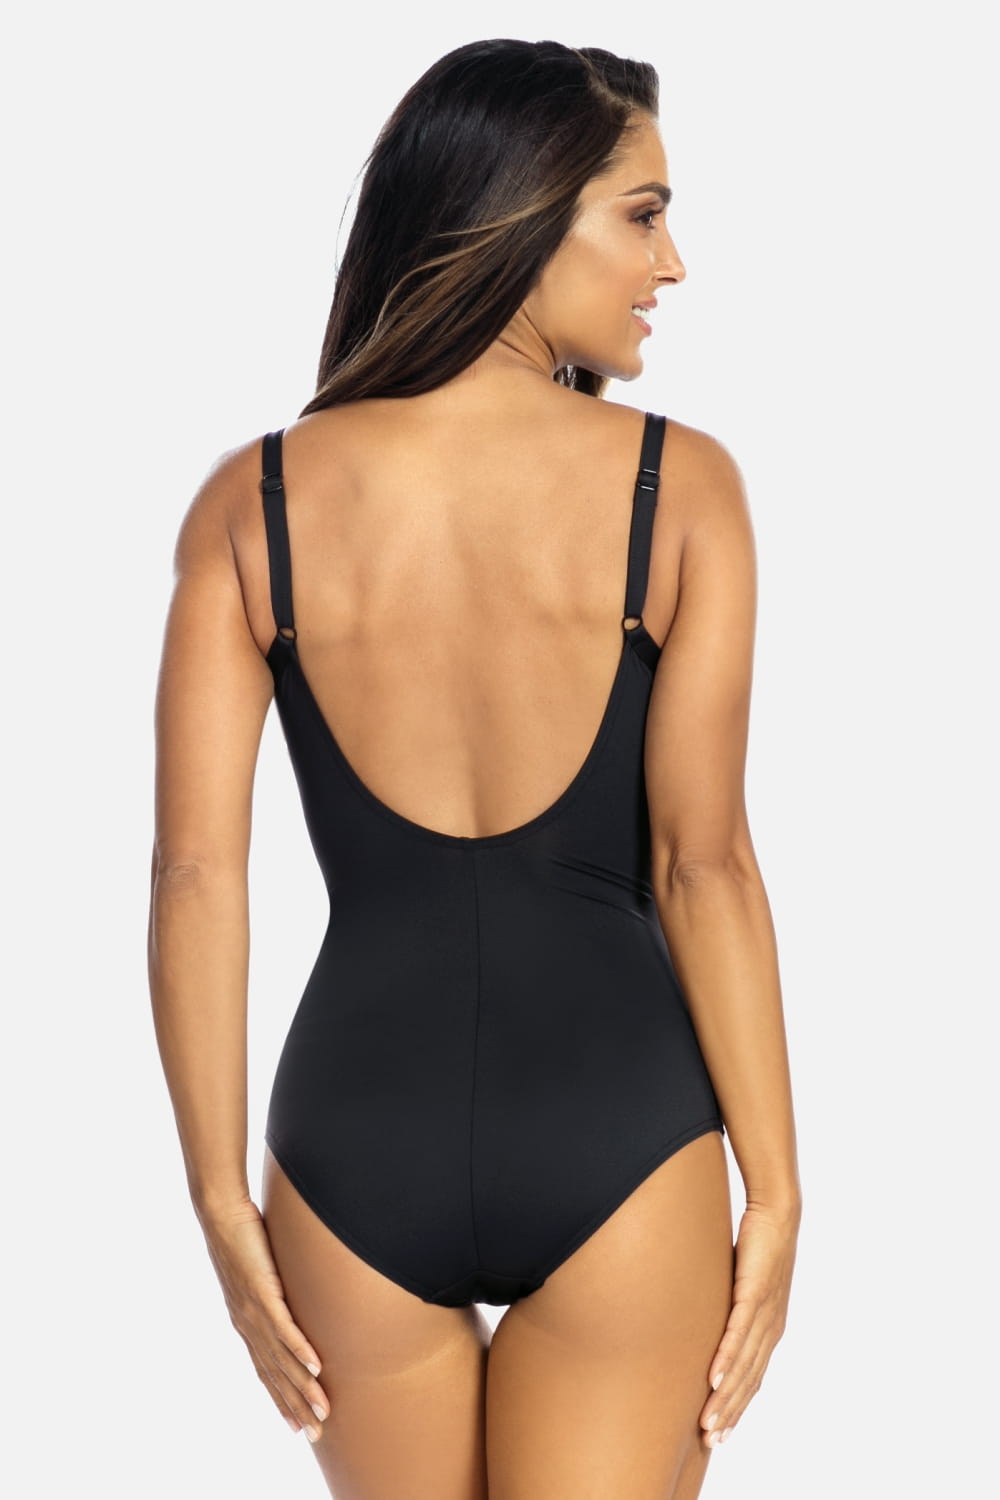 Luxury Swimwear F30 Slimming One Piece Swimsuit Black/Silver